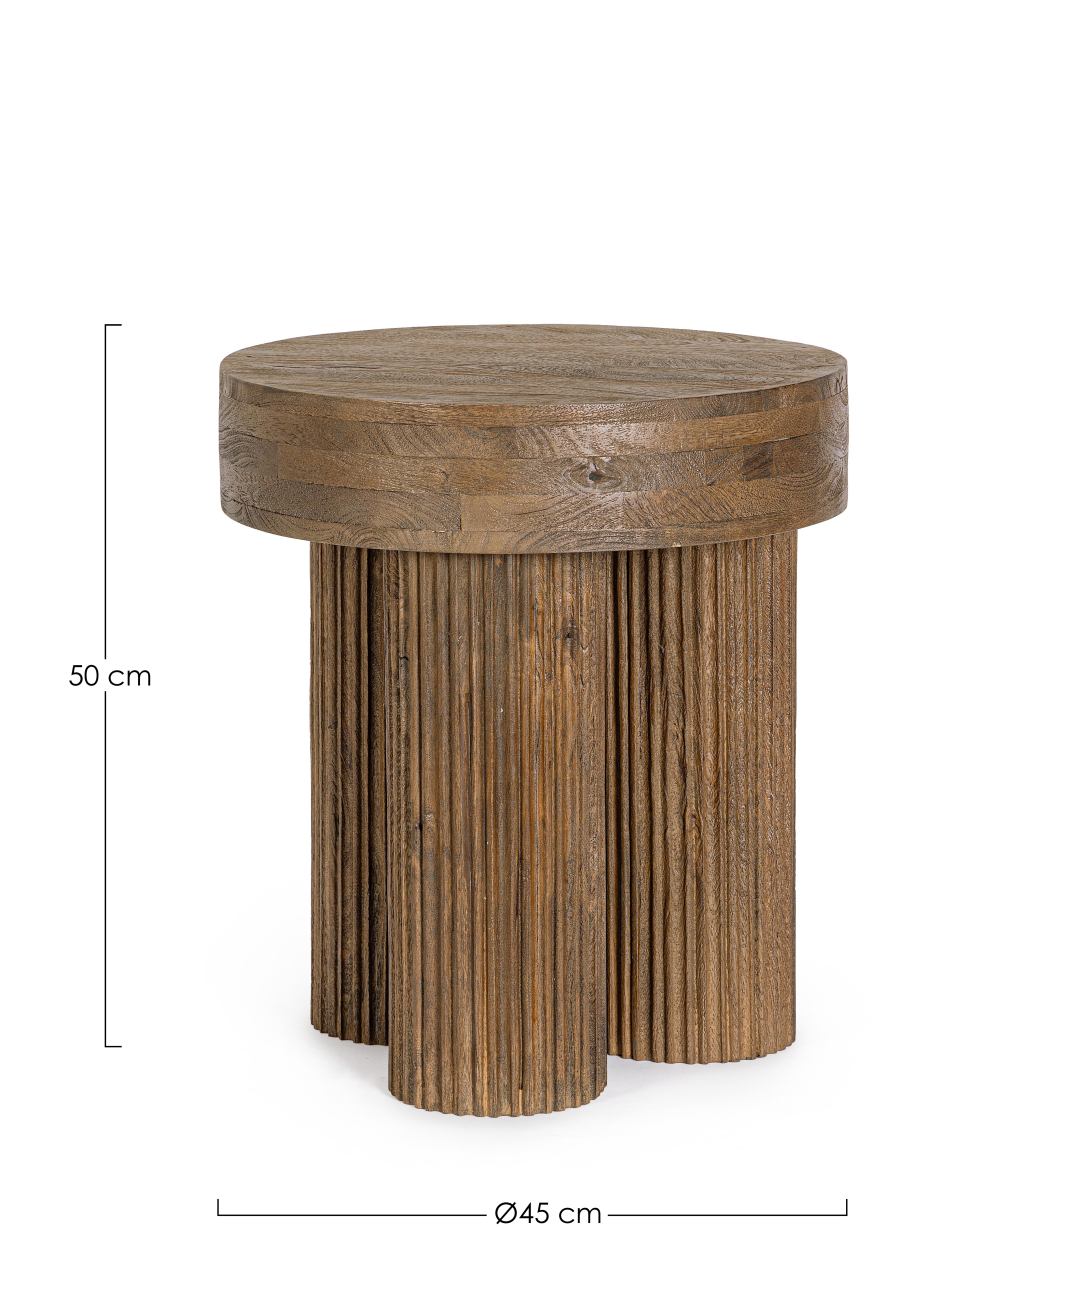 Der Couchtisch Dacca überzeugt mit seinem modernen Stil. Gefertigt wurde er aus Mangoholz, welches einen braunen Farbton besitzt. Das Gestell ist auch aus Mangoholz. Der Couchtisch besitzt einen Durchmesser von 45 cm.